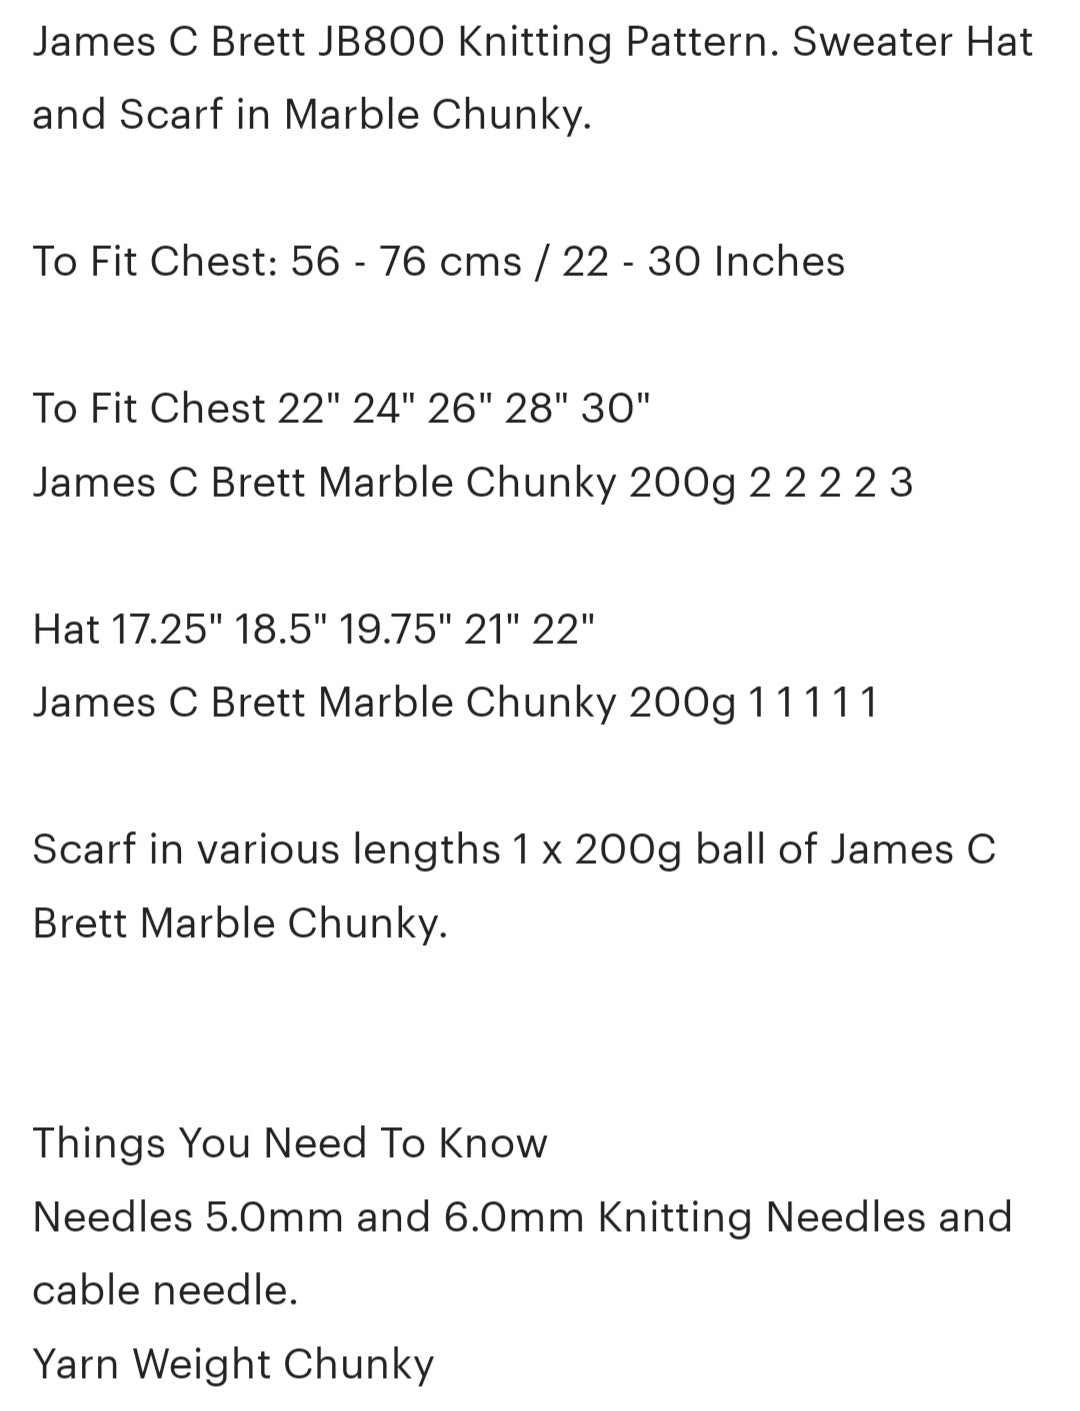 James C Brett Chunky Pattern JB800